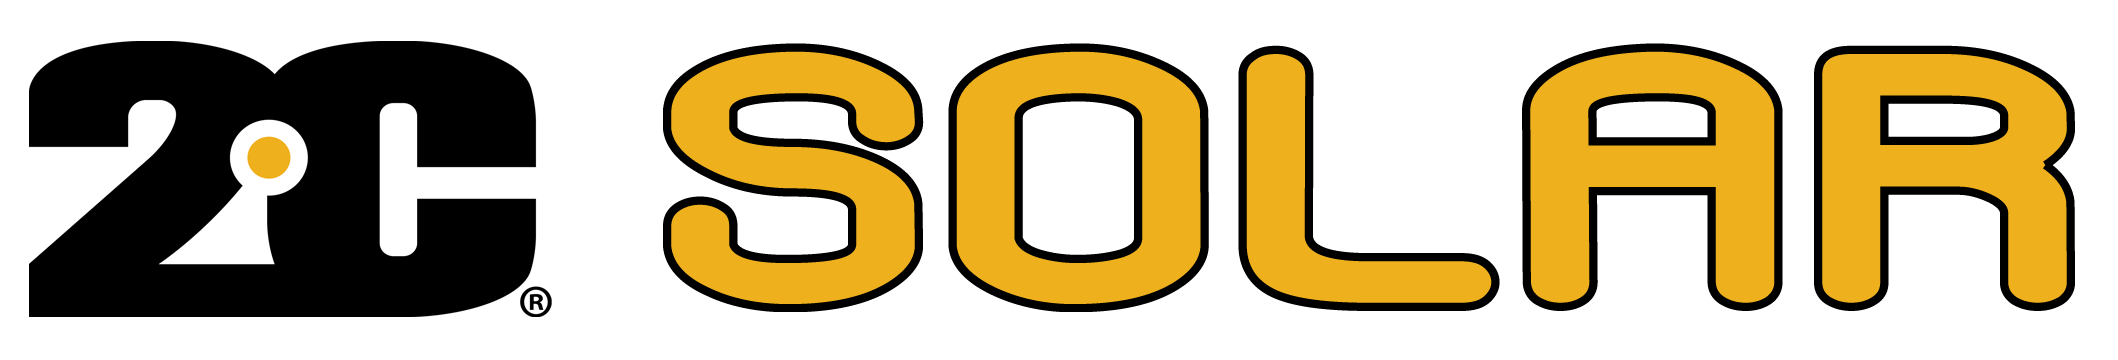 2C Logo